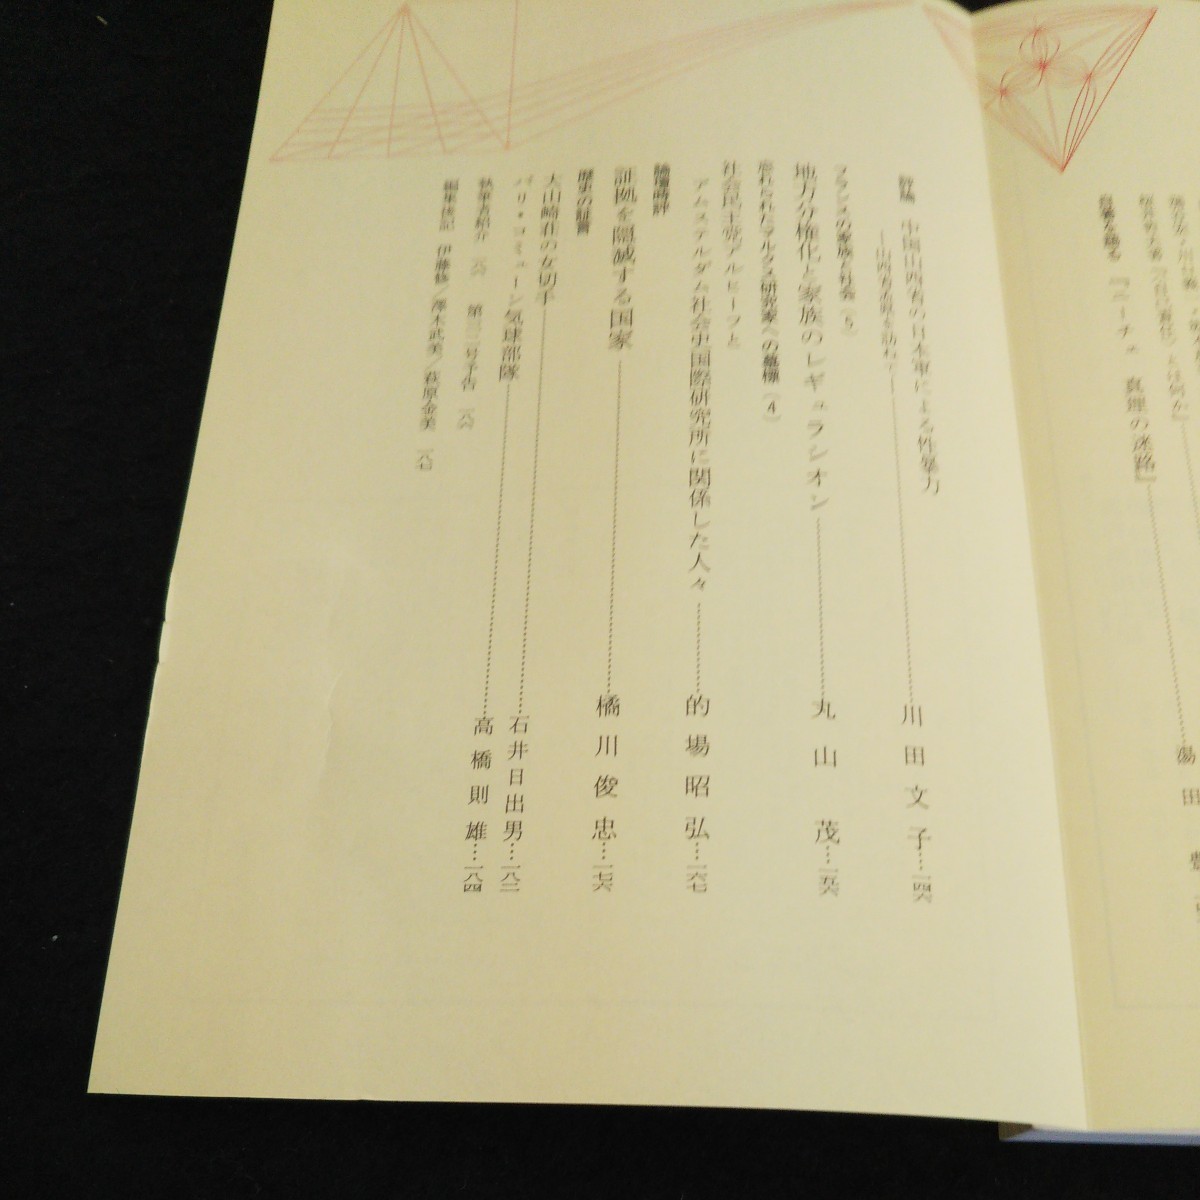 a-203 神奈川大学評論 特集=政治・行政・組織の現在ー解体と空白のなかで 株式会社精興社 1998年発行 ※4_画像2